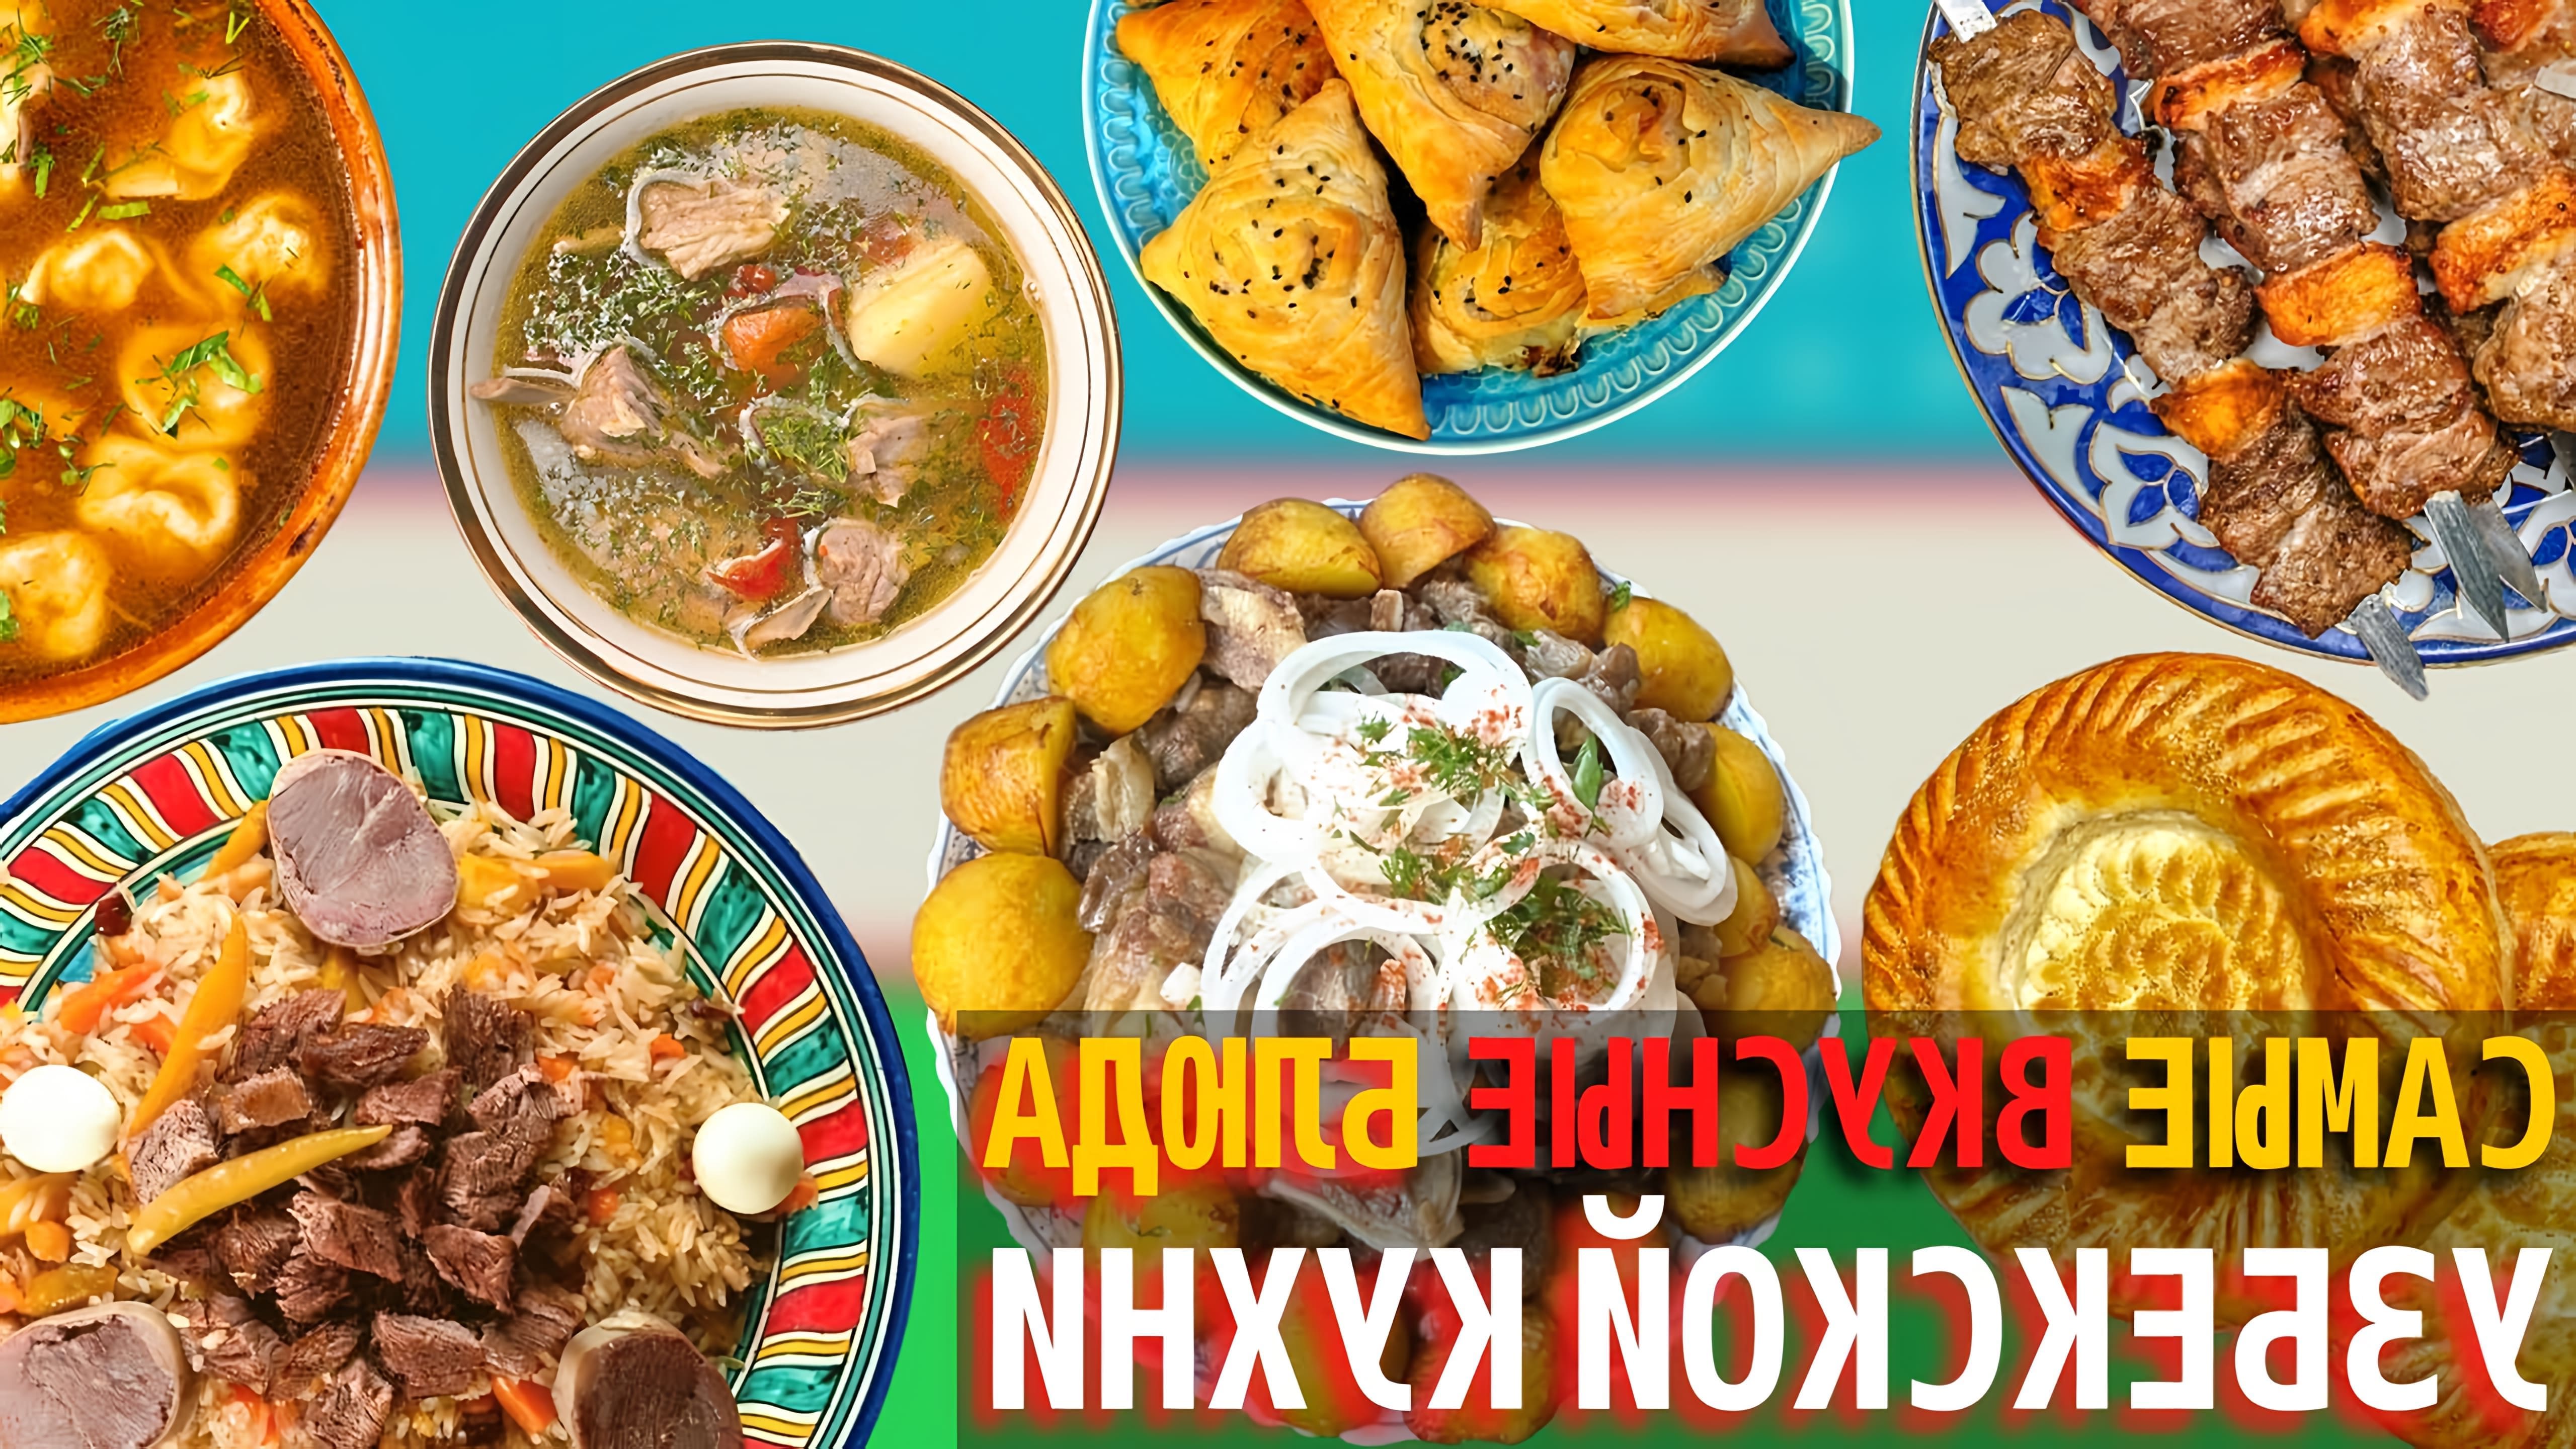 Узбекская кухня славится своим разнообразием и мастерством, при этом готовка считается почетной профессией